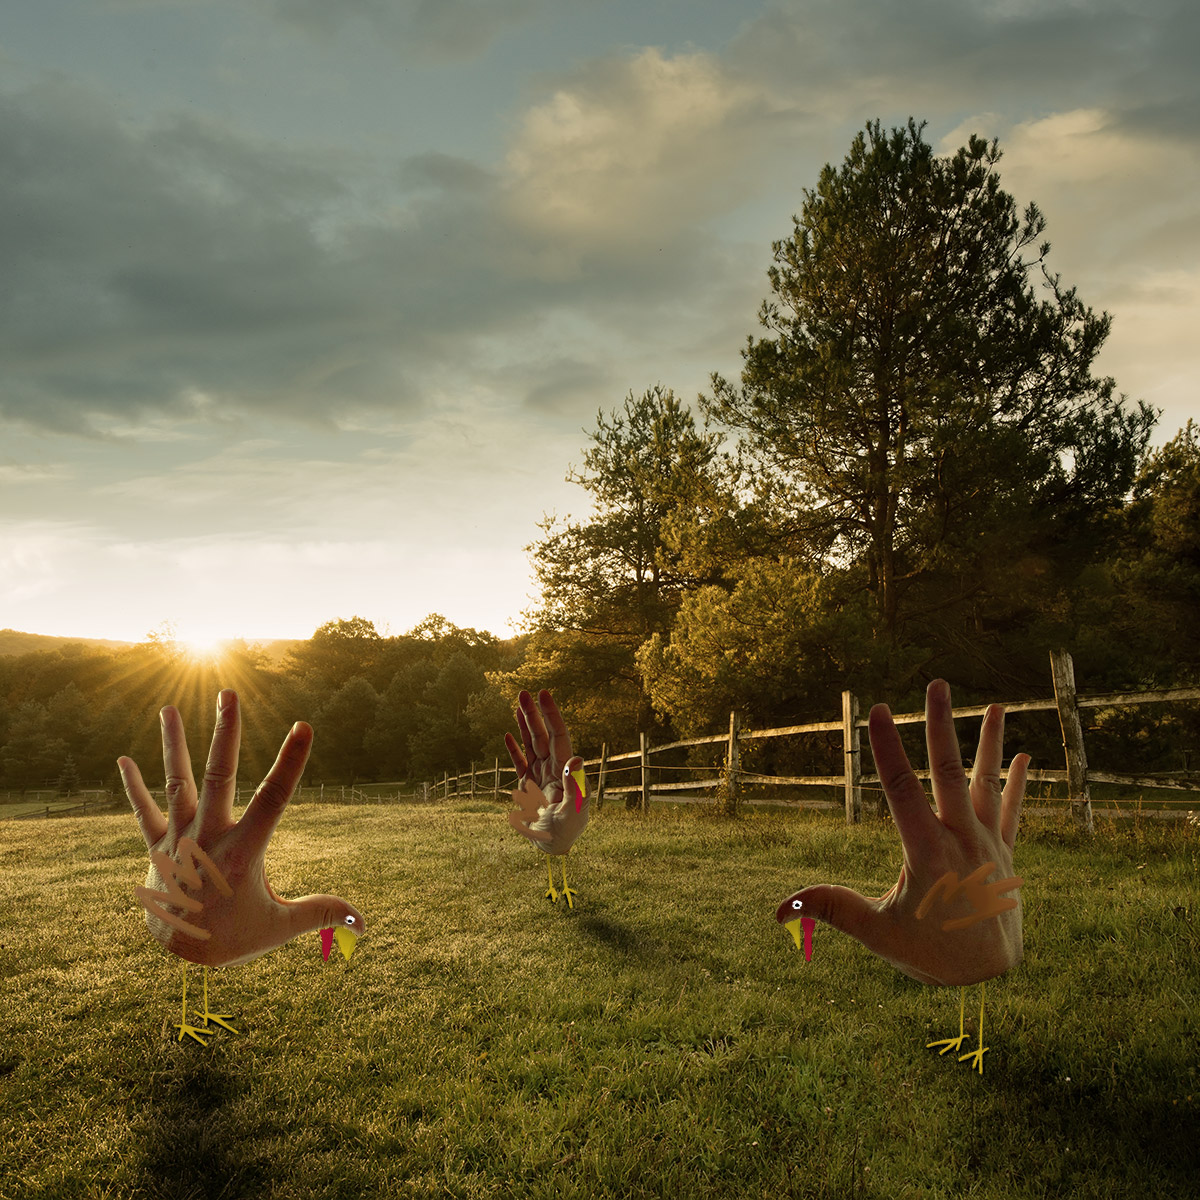 Hand turkeys in a field